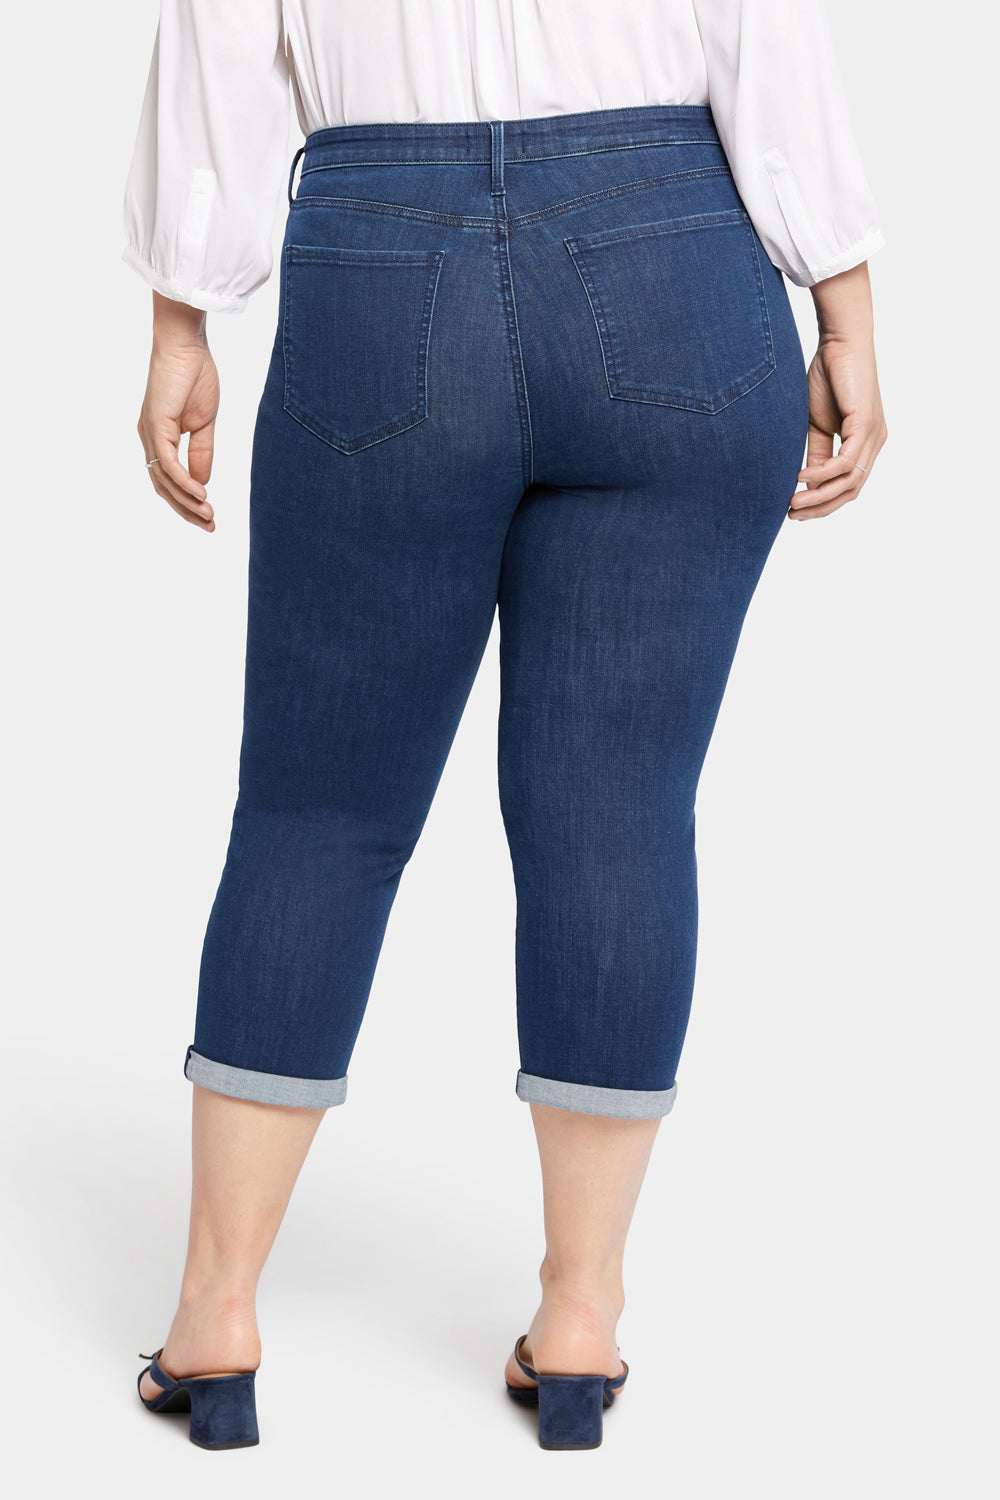 NYDJ Chloe Skinny Capri Jeans In Plus Size In Cool Embrace® Denim With Roll Cuffs - Arise